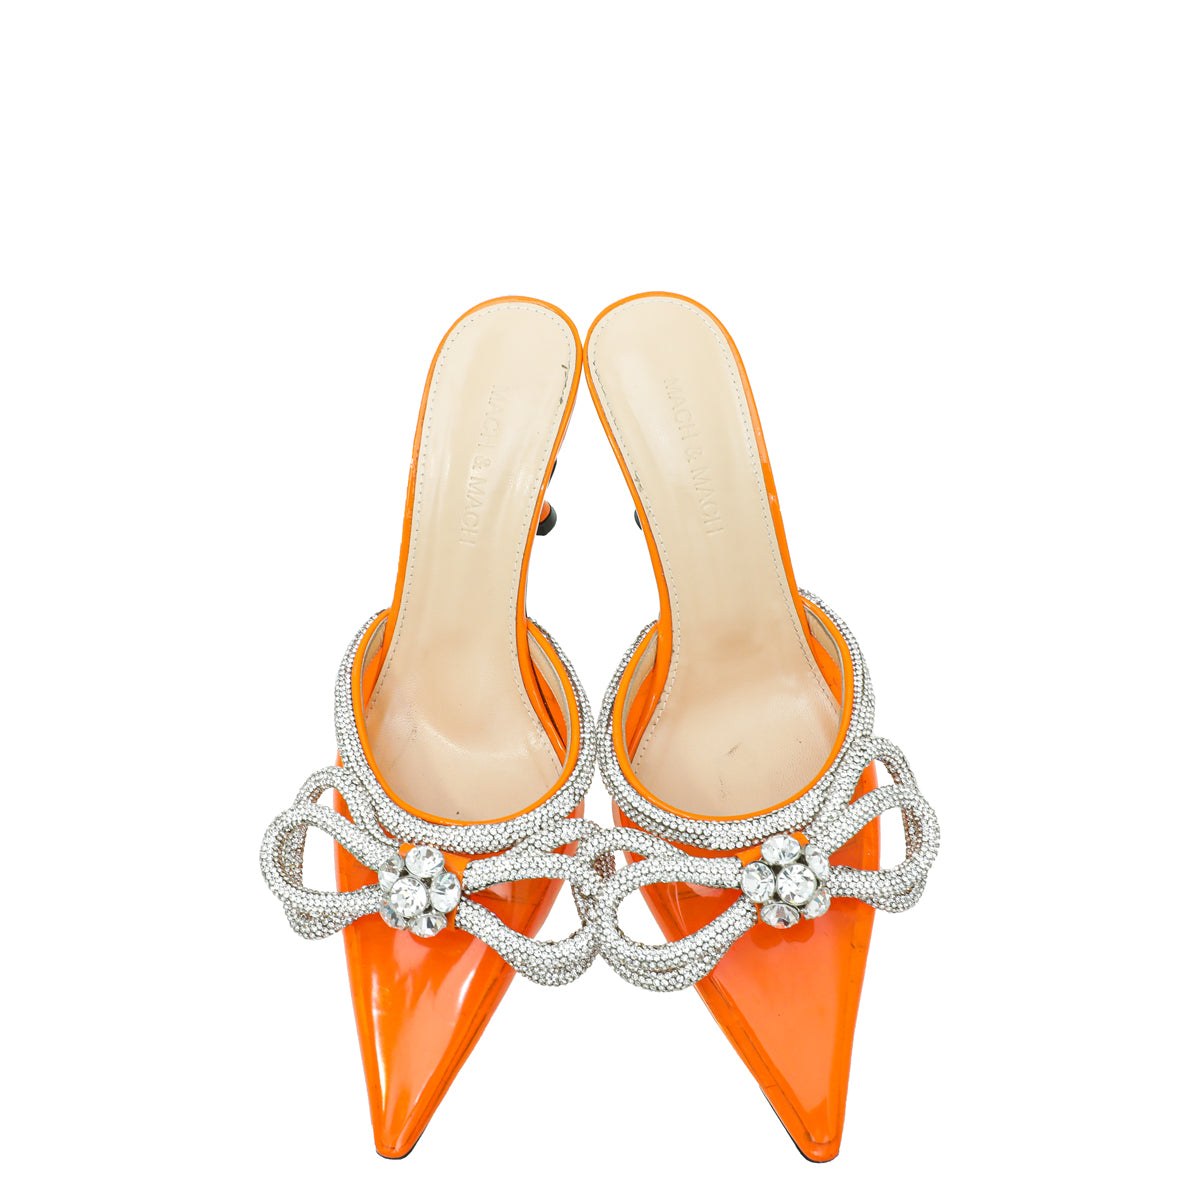 Mach & Mach Orange Crystal Bow PVC Mules 37.5